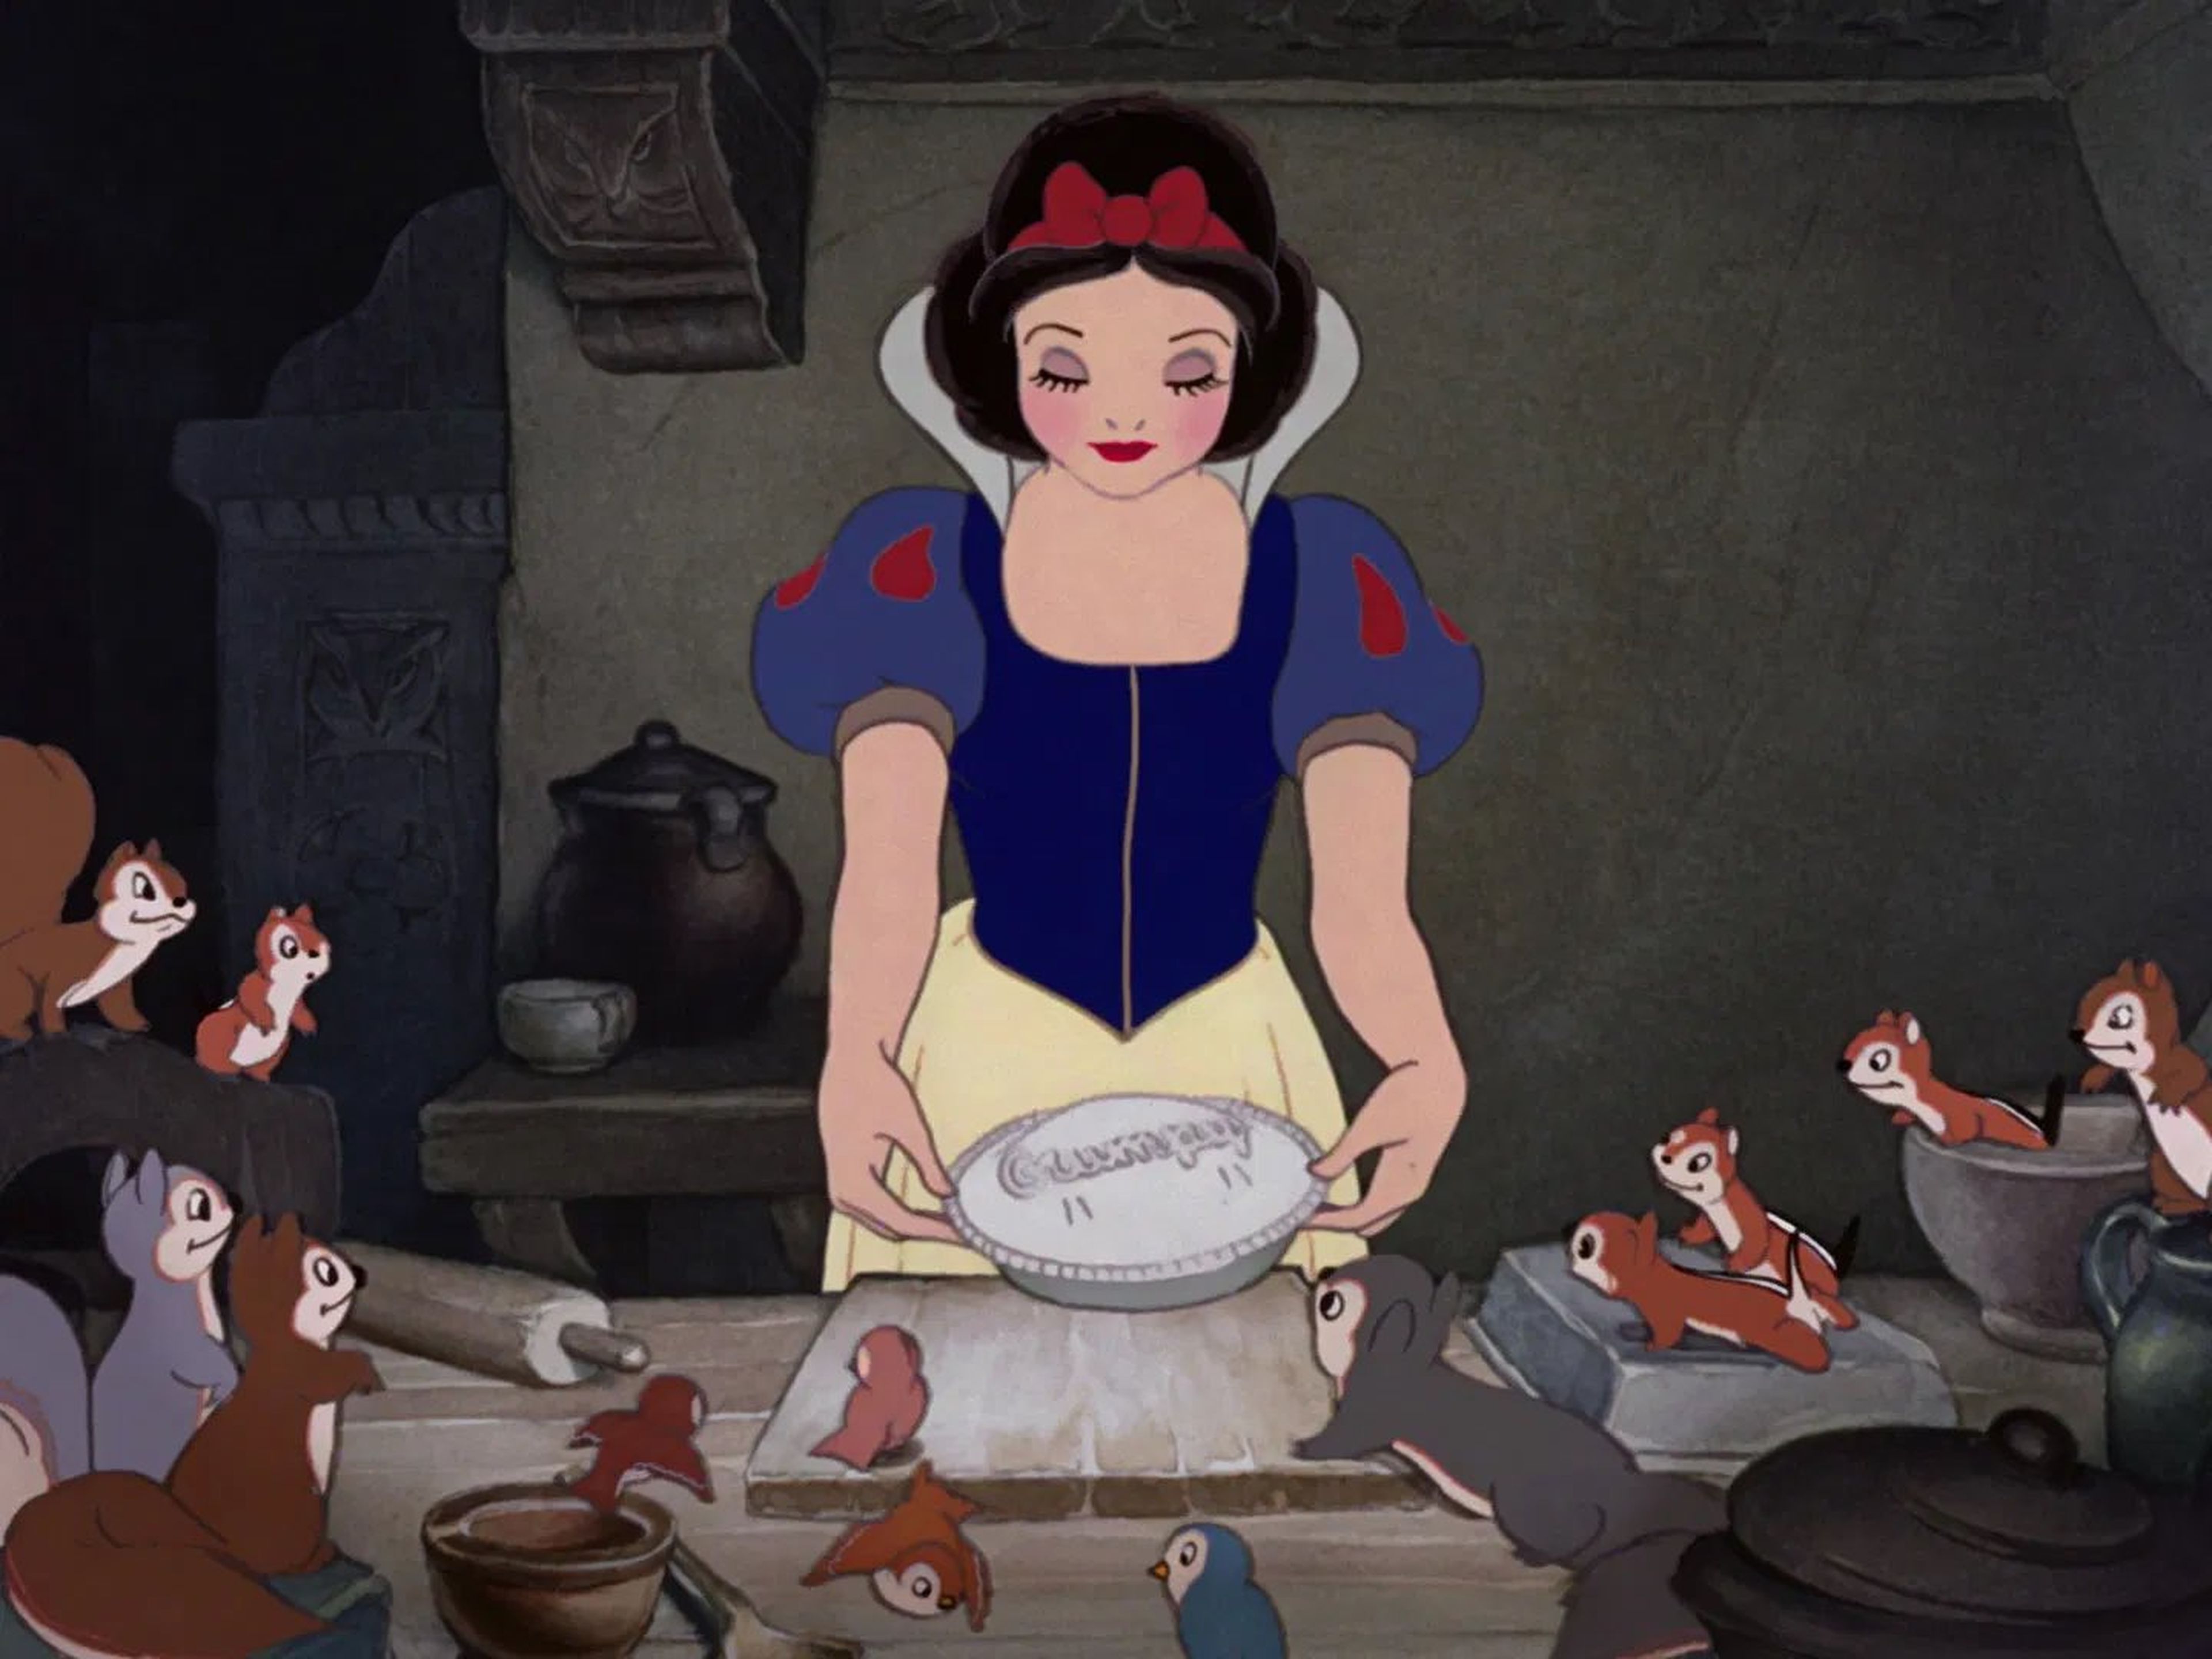 12 recetas fáciles para recrear estas escenas de películas Disney.